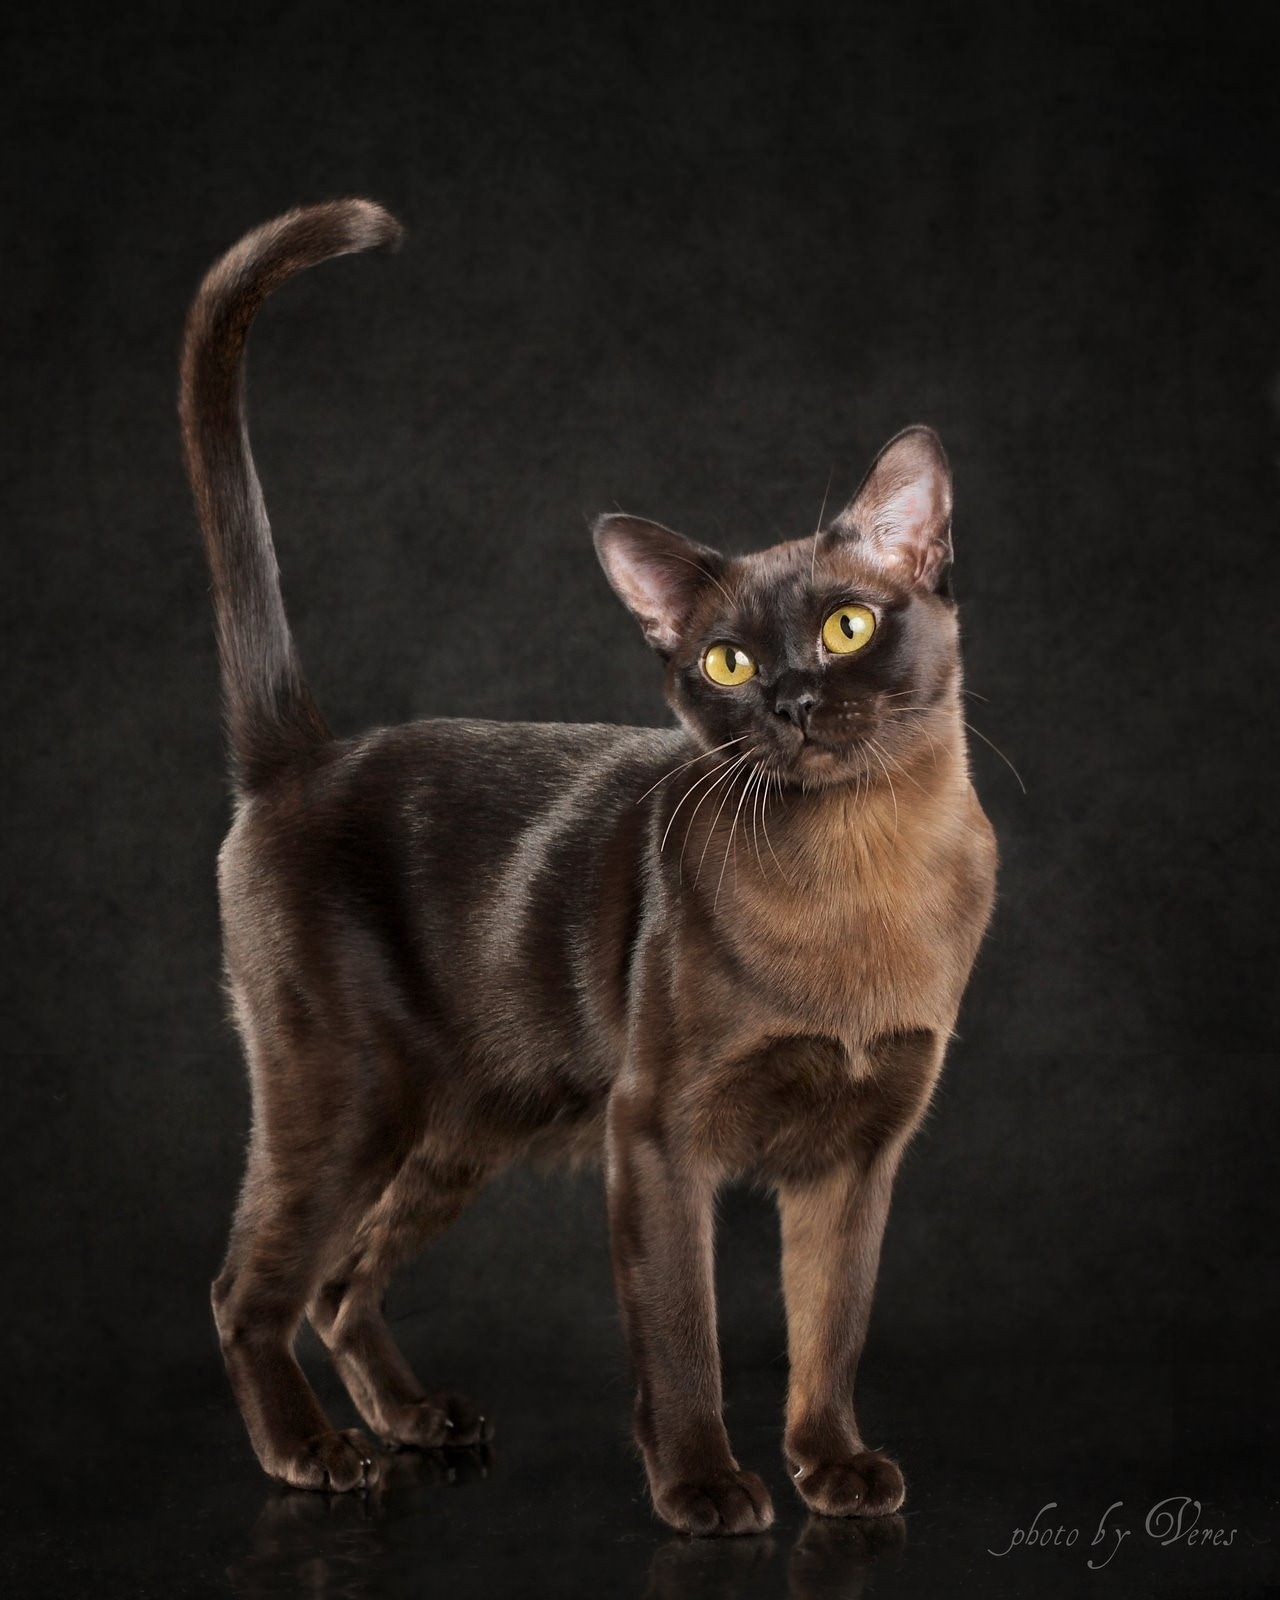 Бурма кошка фото